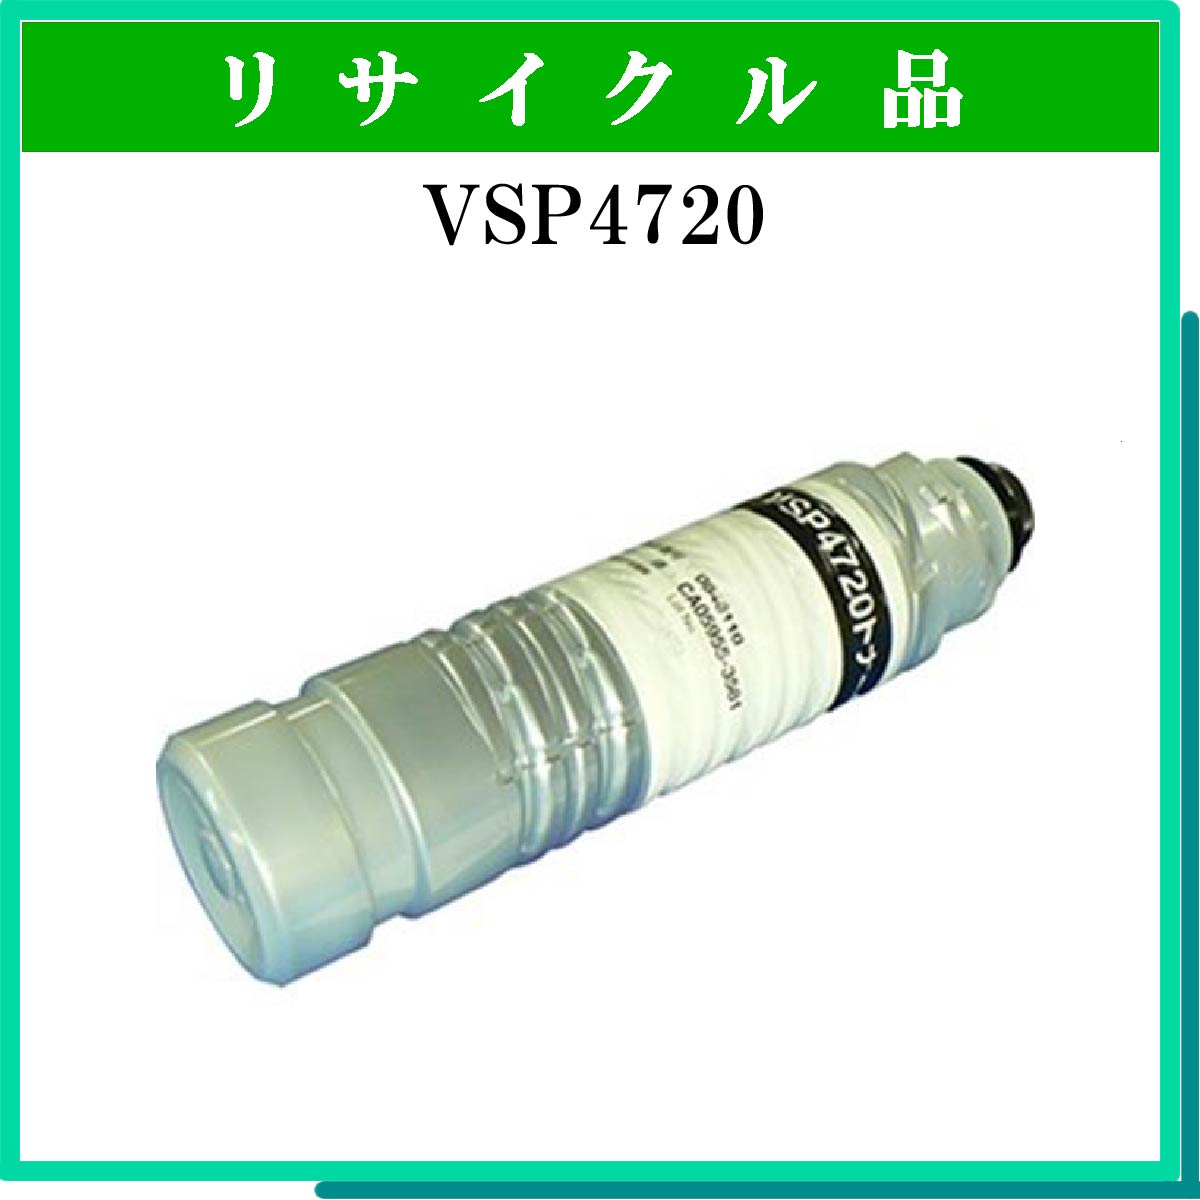 VSP4720